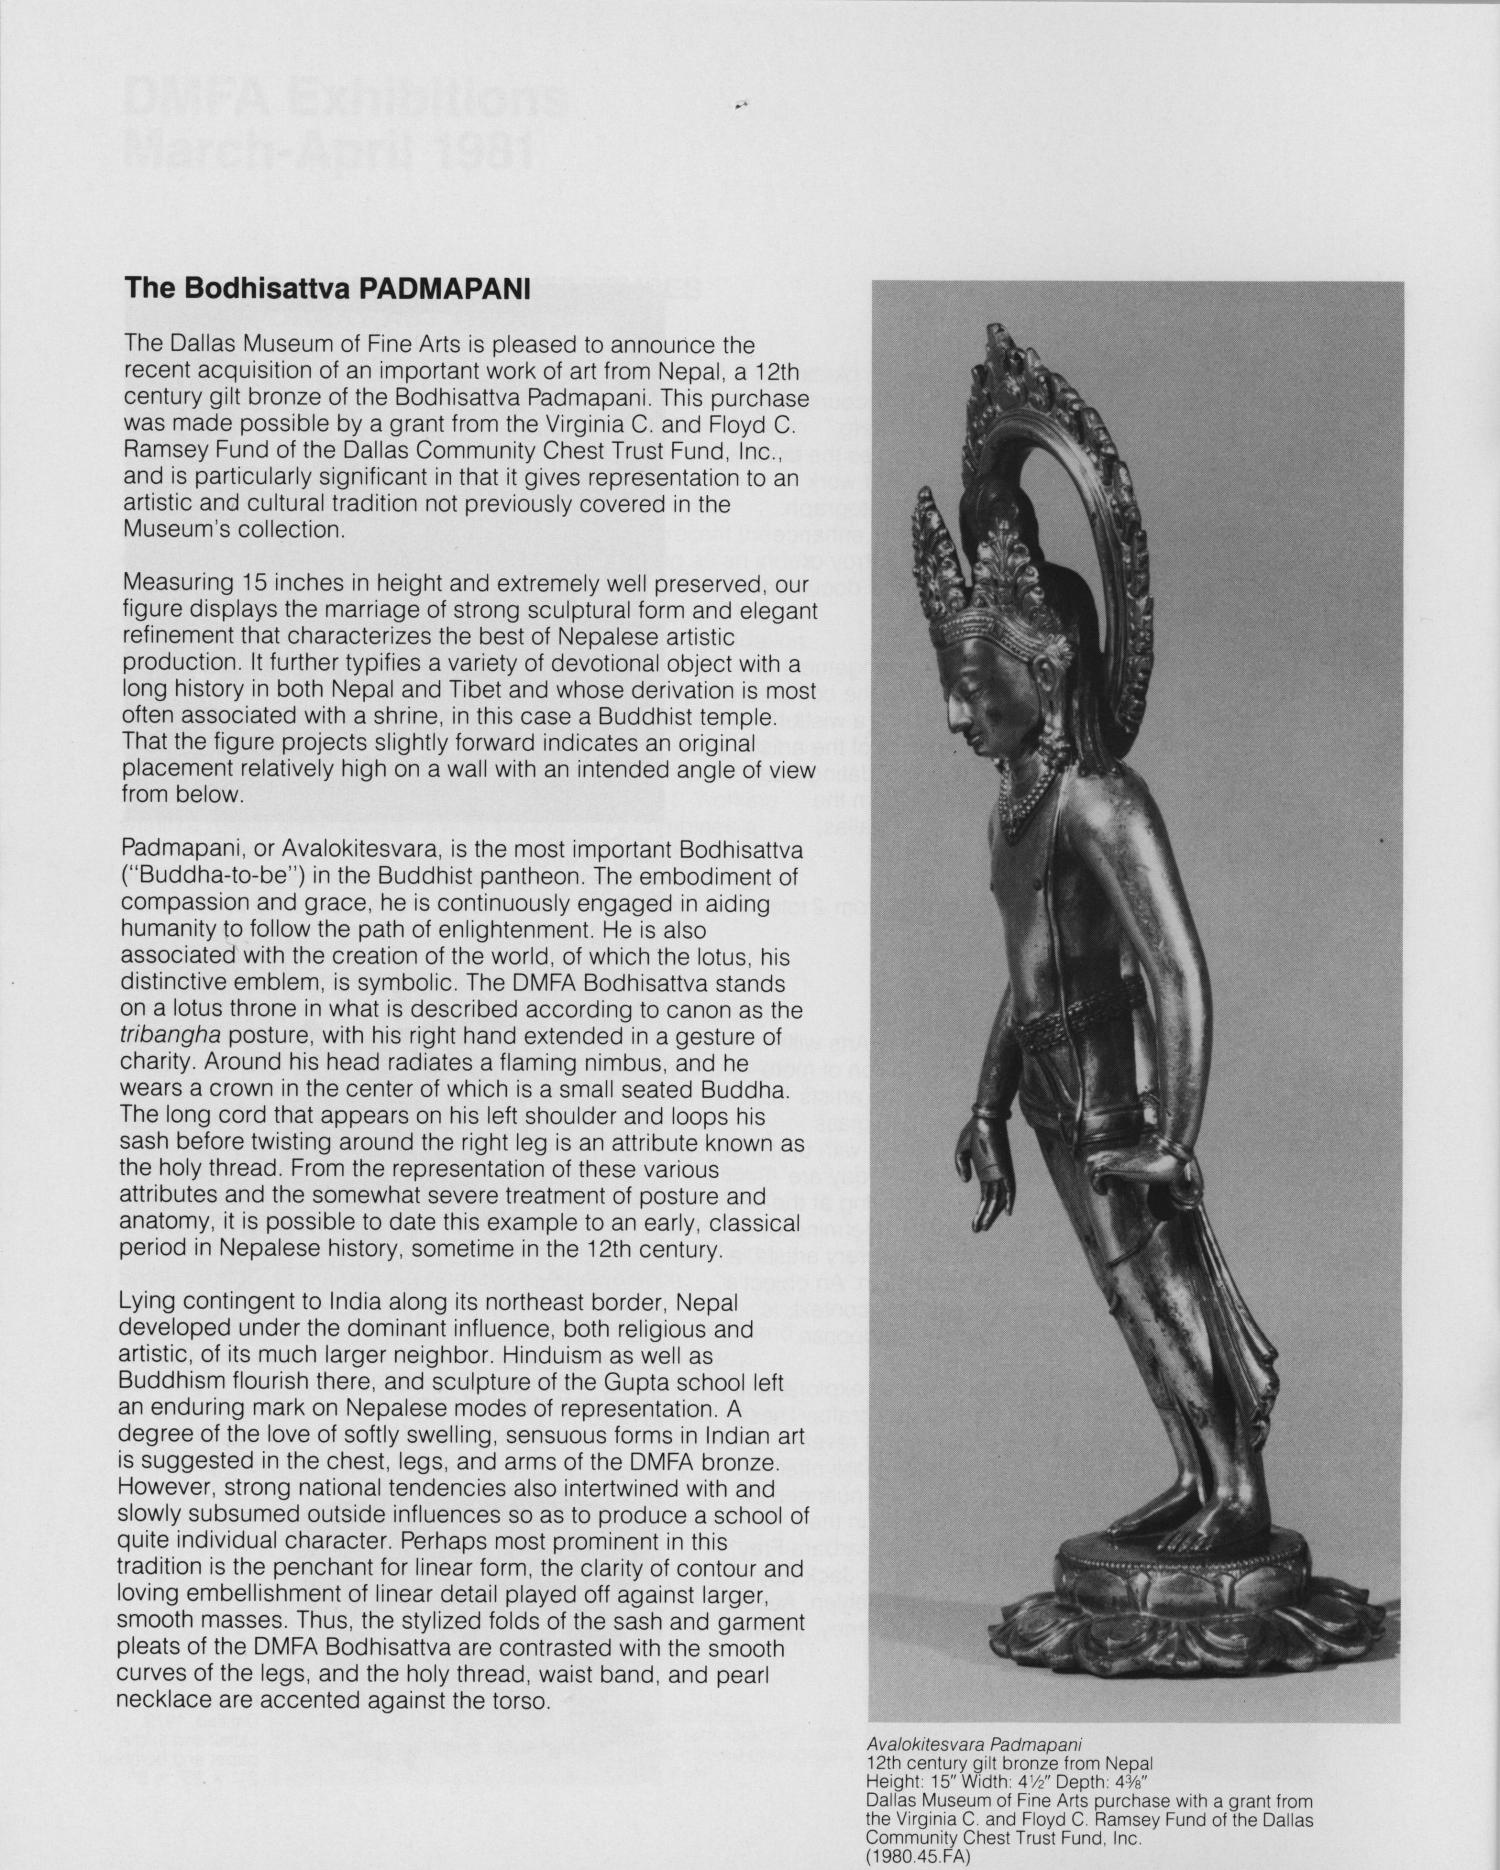 Dallas Museum of Fine Arts Bulletin, March-April 1981
                                                
                                                    2
                                                